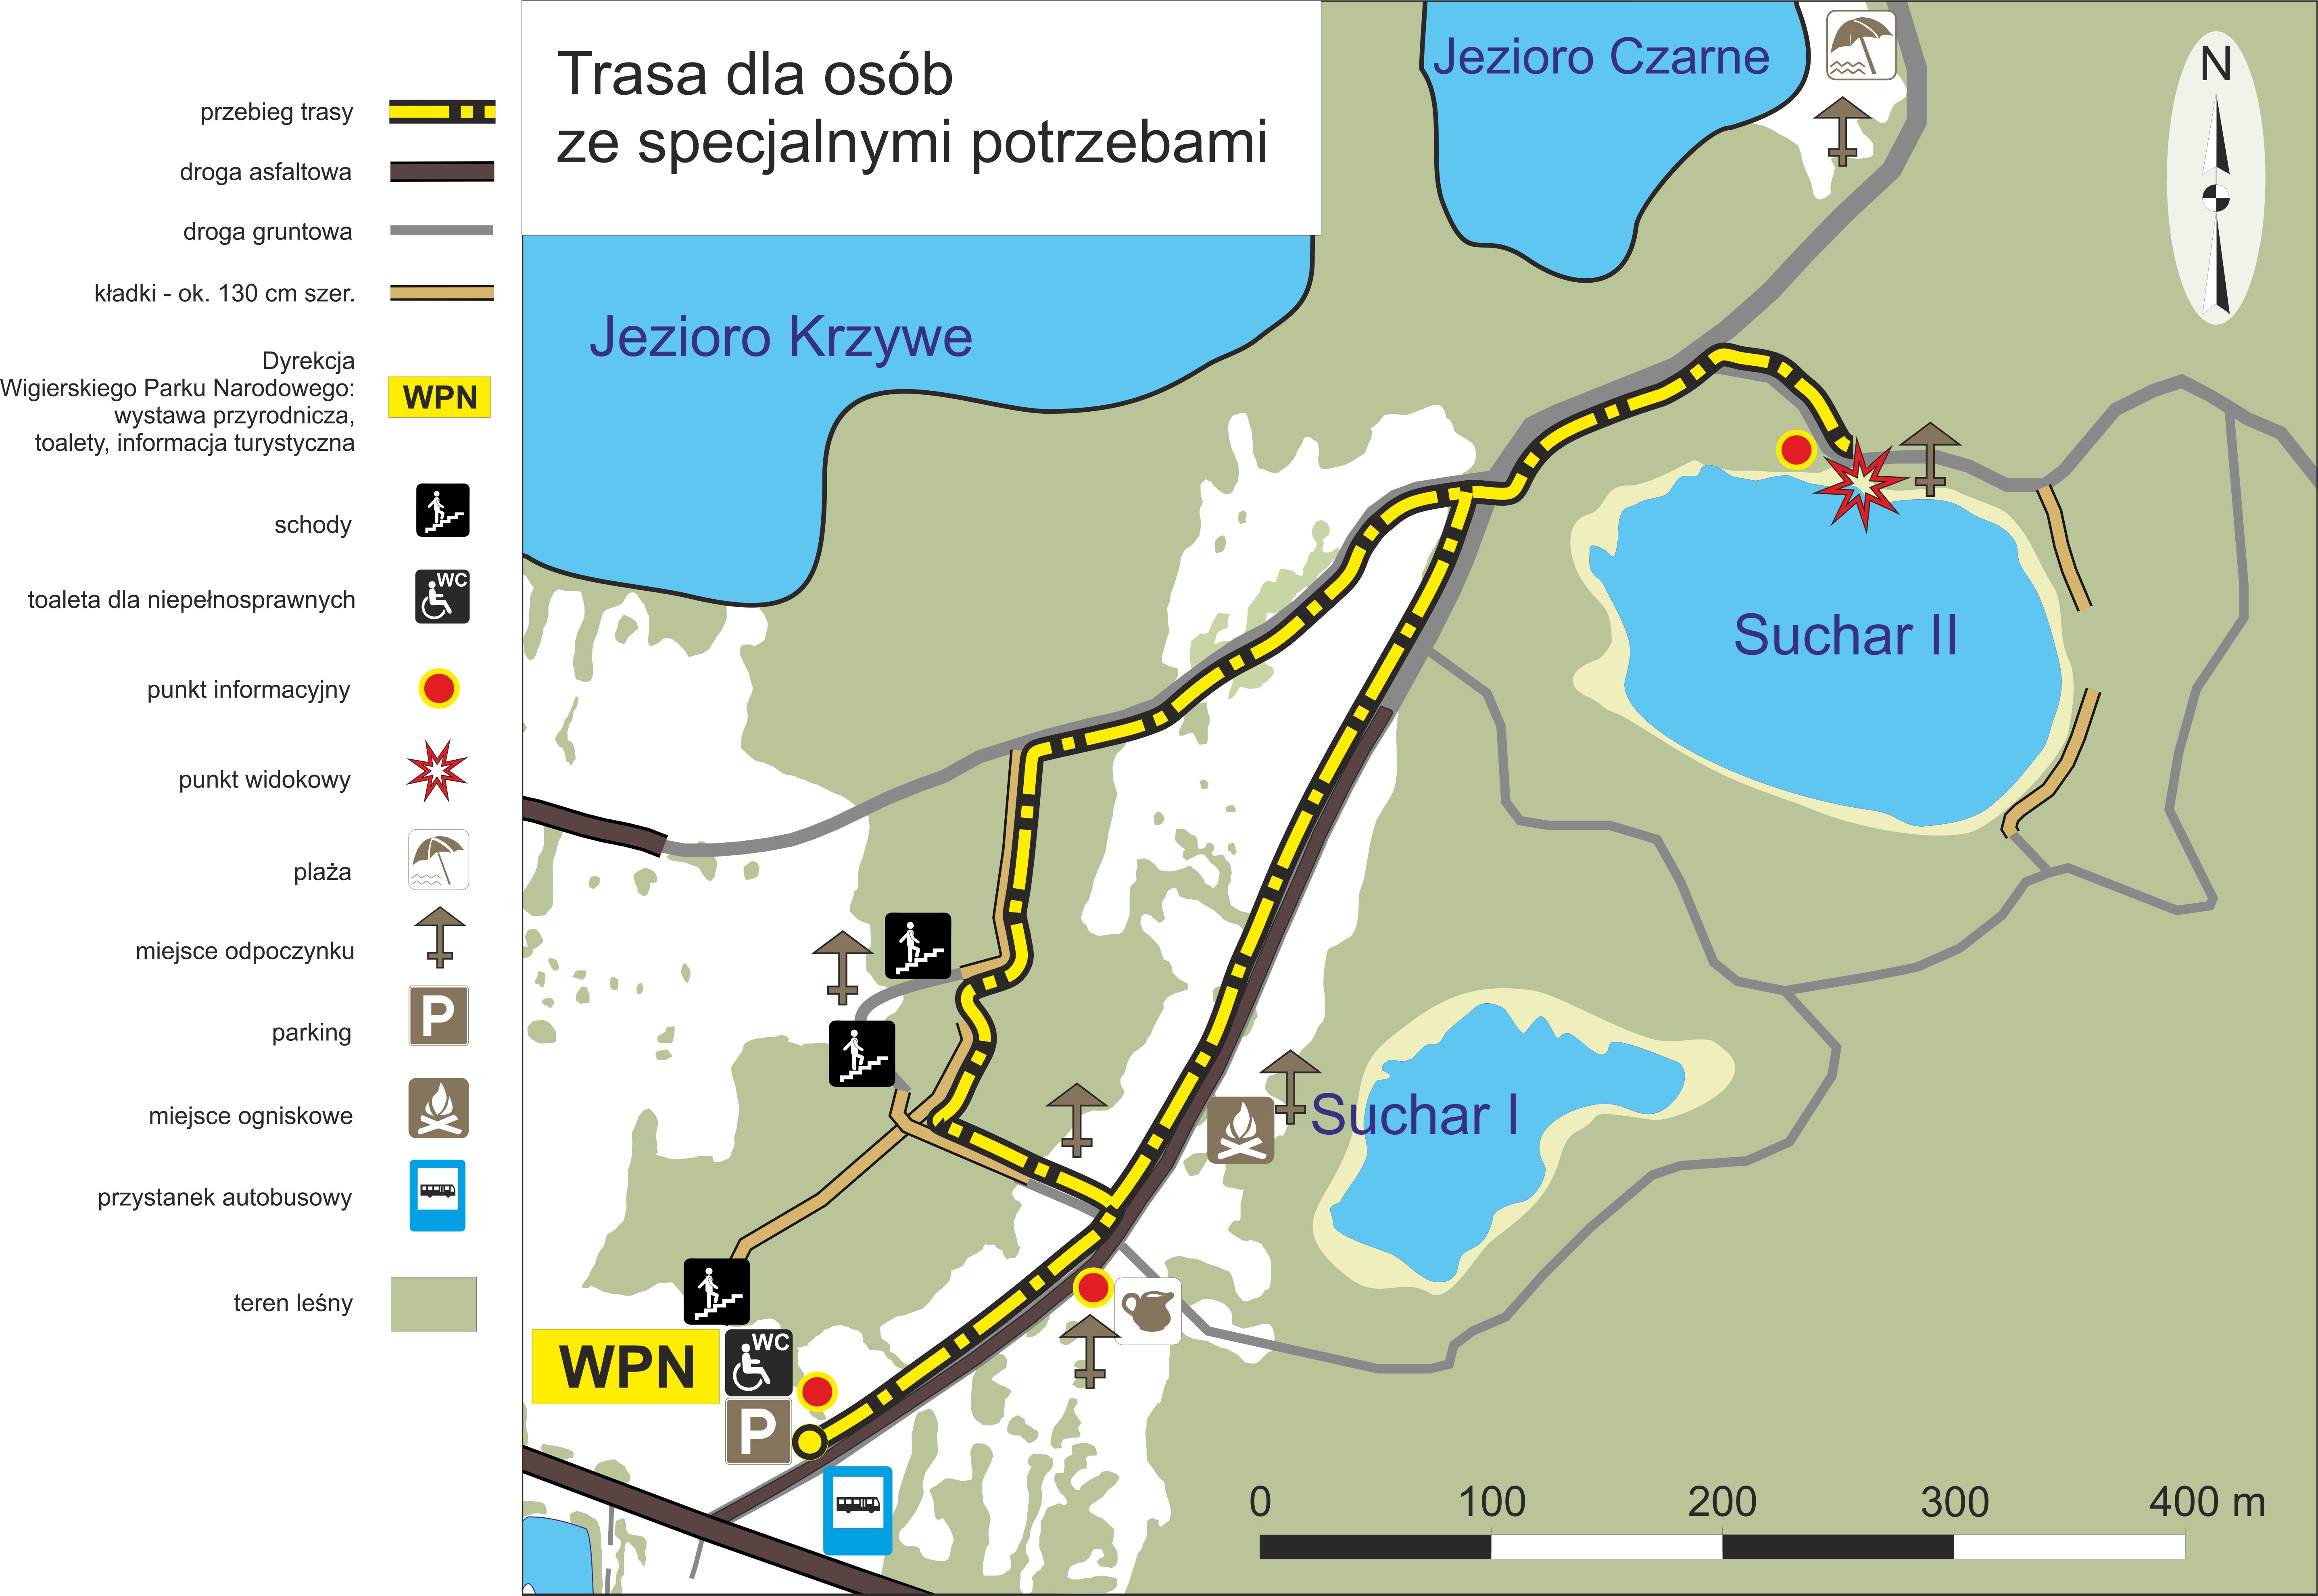 Mapa okolicy siedziby parku, pokazująca trasę dla osób ze specjalnymi potrzebami. Trasa prowadzi do punktu widokowego nad jeziorem Suchar II.